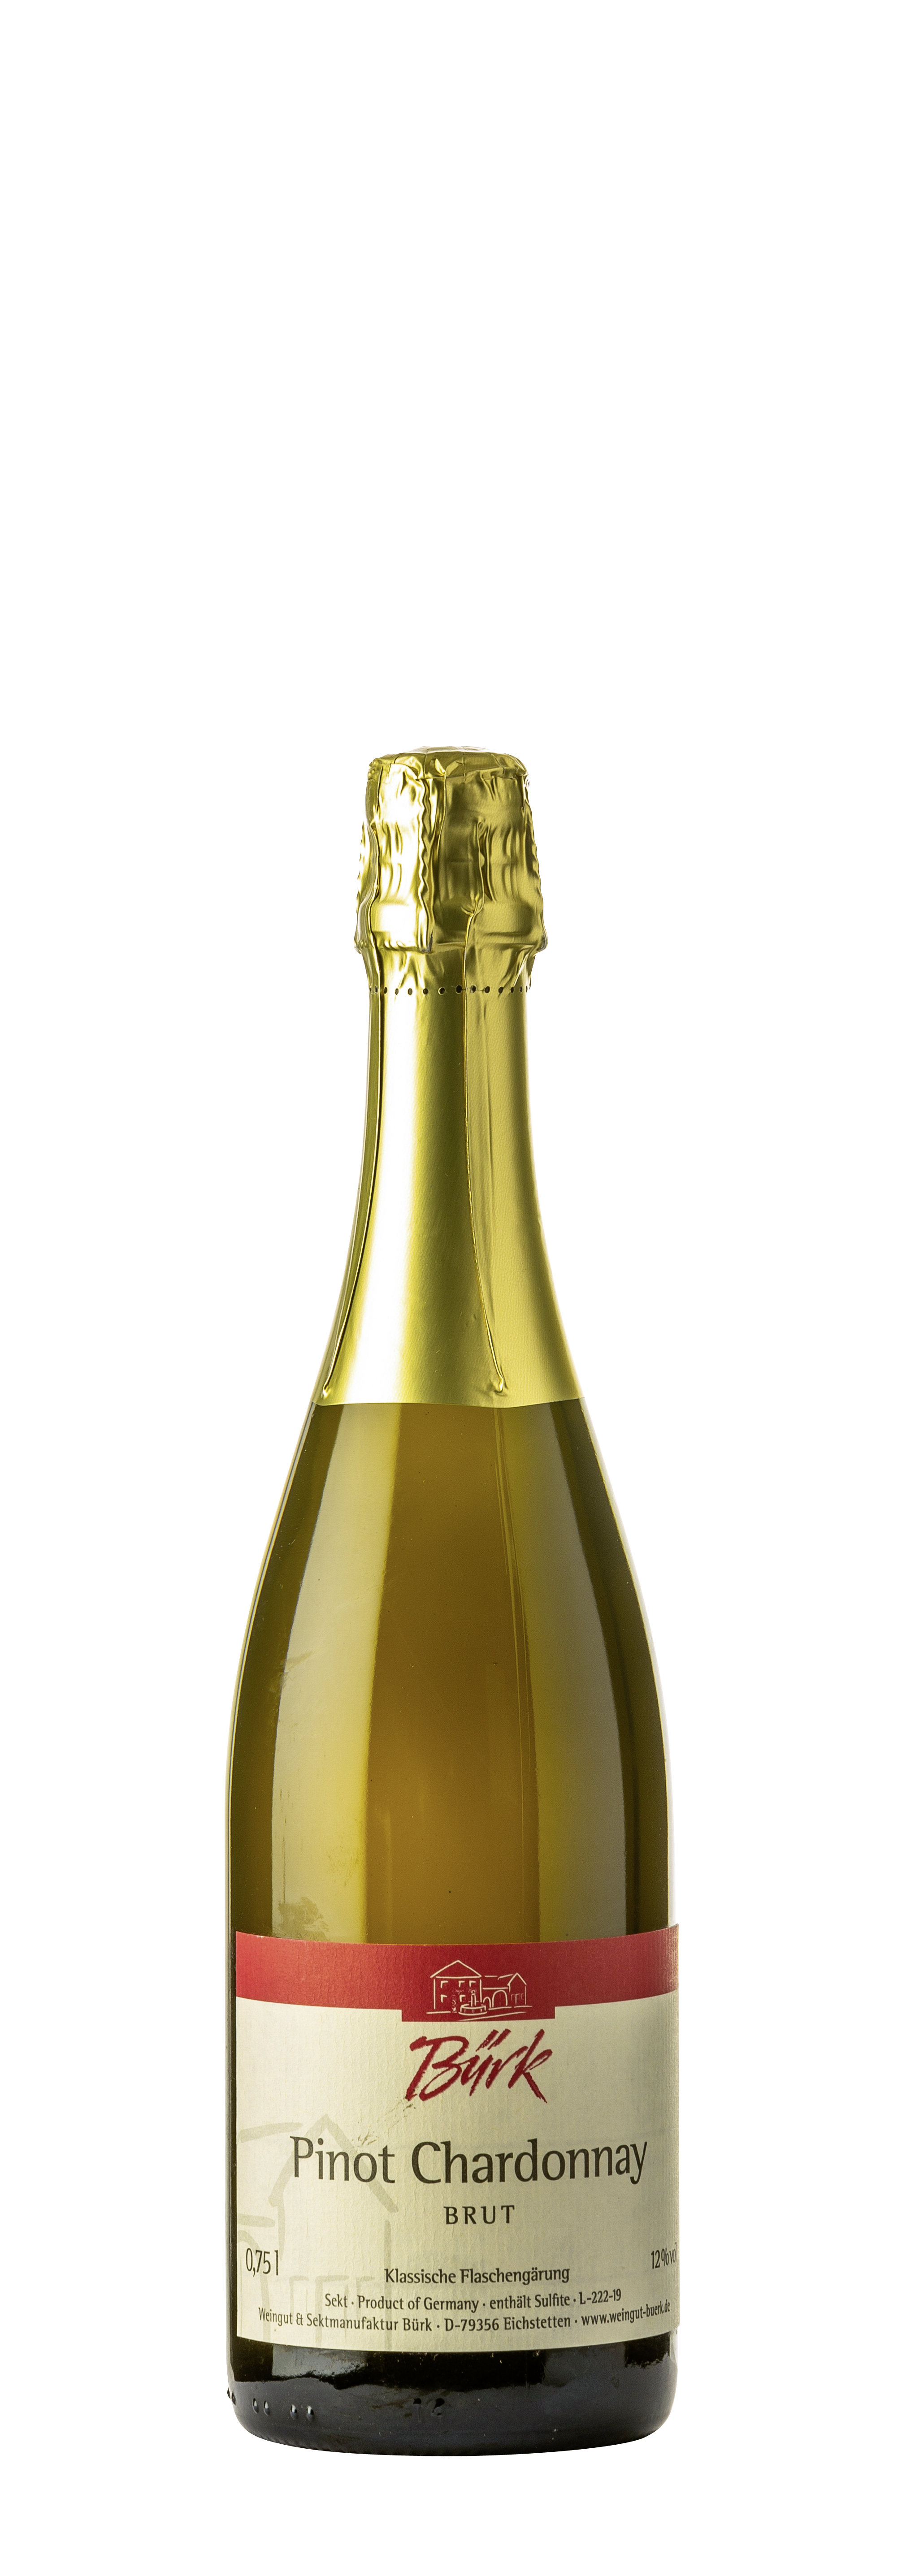 Pinot Chardonnay Brut 2017